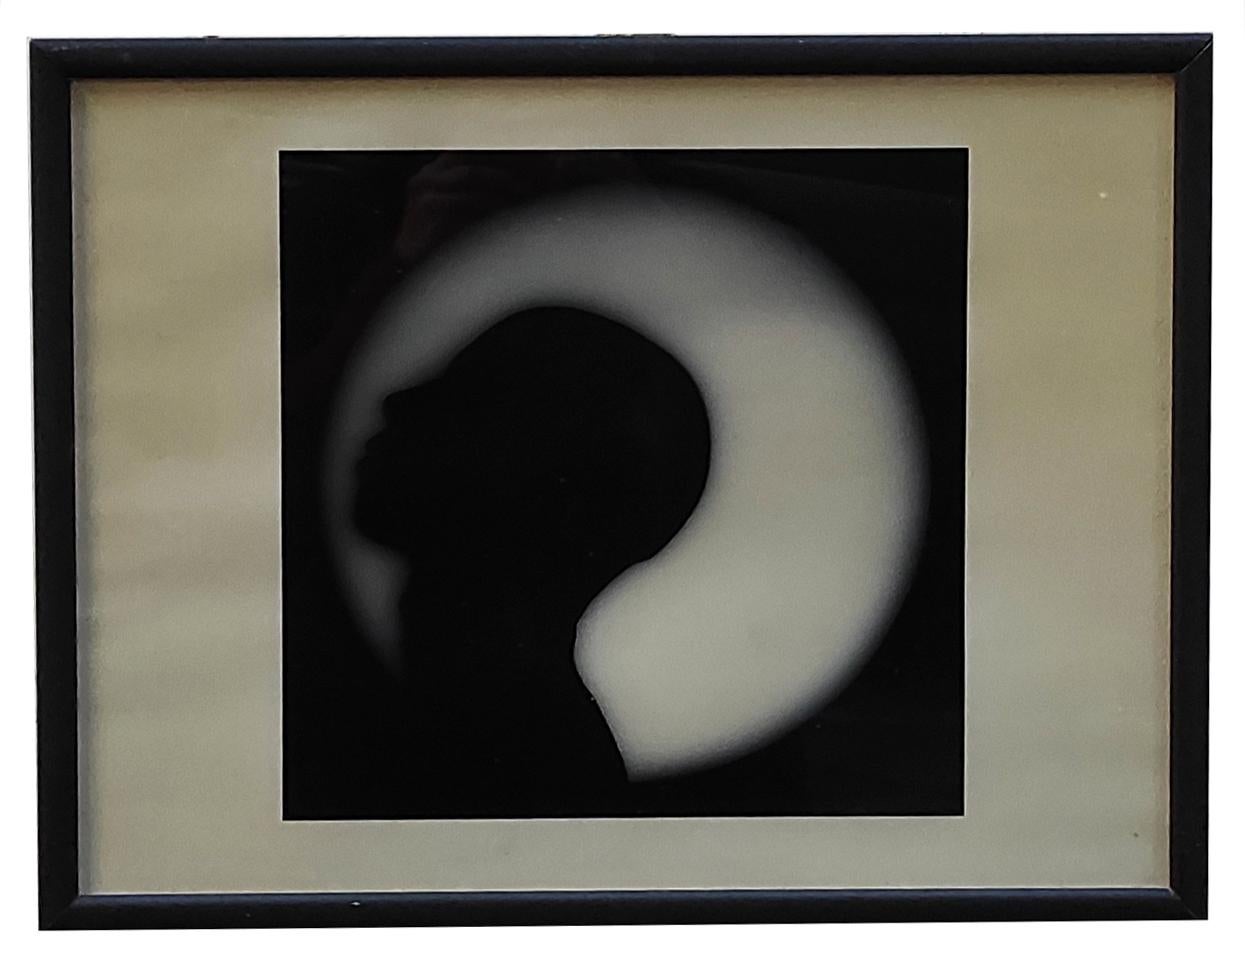 Black and White Photograph Unknown - CHIARO DI LUNA - Fotografia bianco e nero su carta fotografica